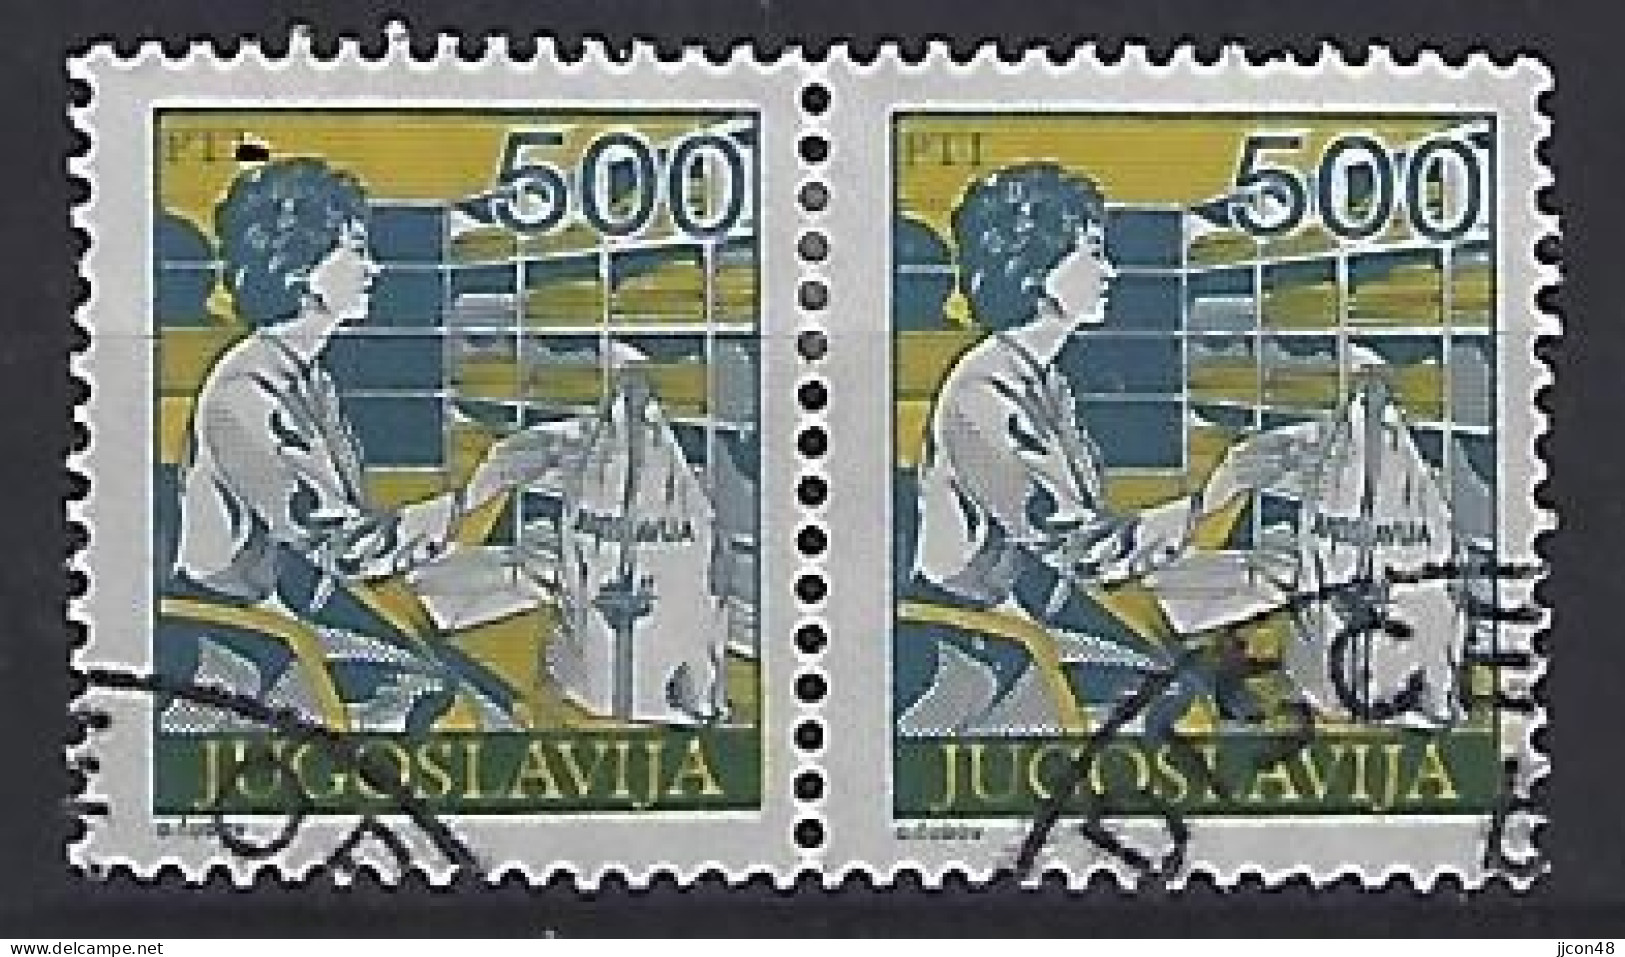 Jugoslavia 1988  Postdienst (o) Mi.2281 A - Gebraucht